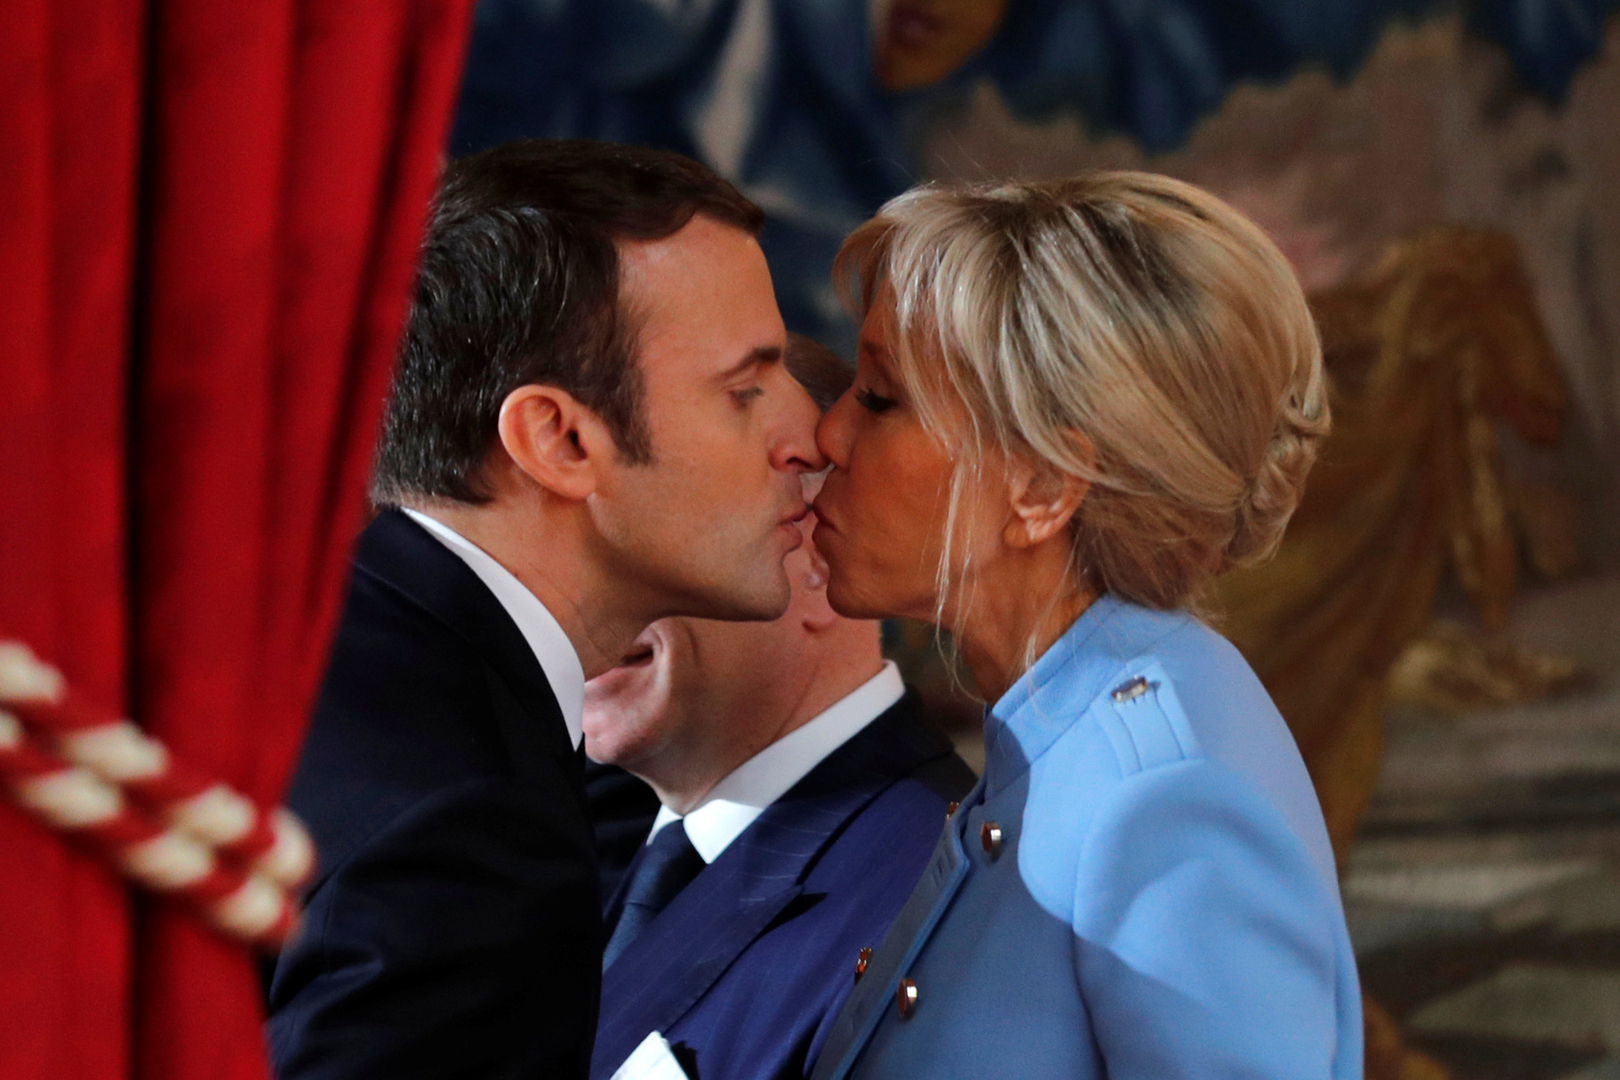 الرئيس الفرنسي وزوجته